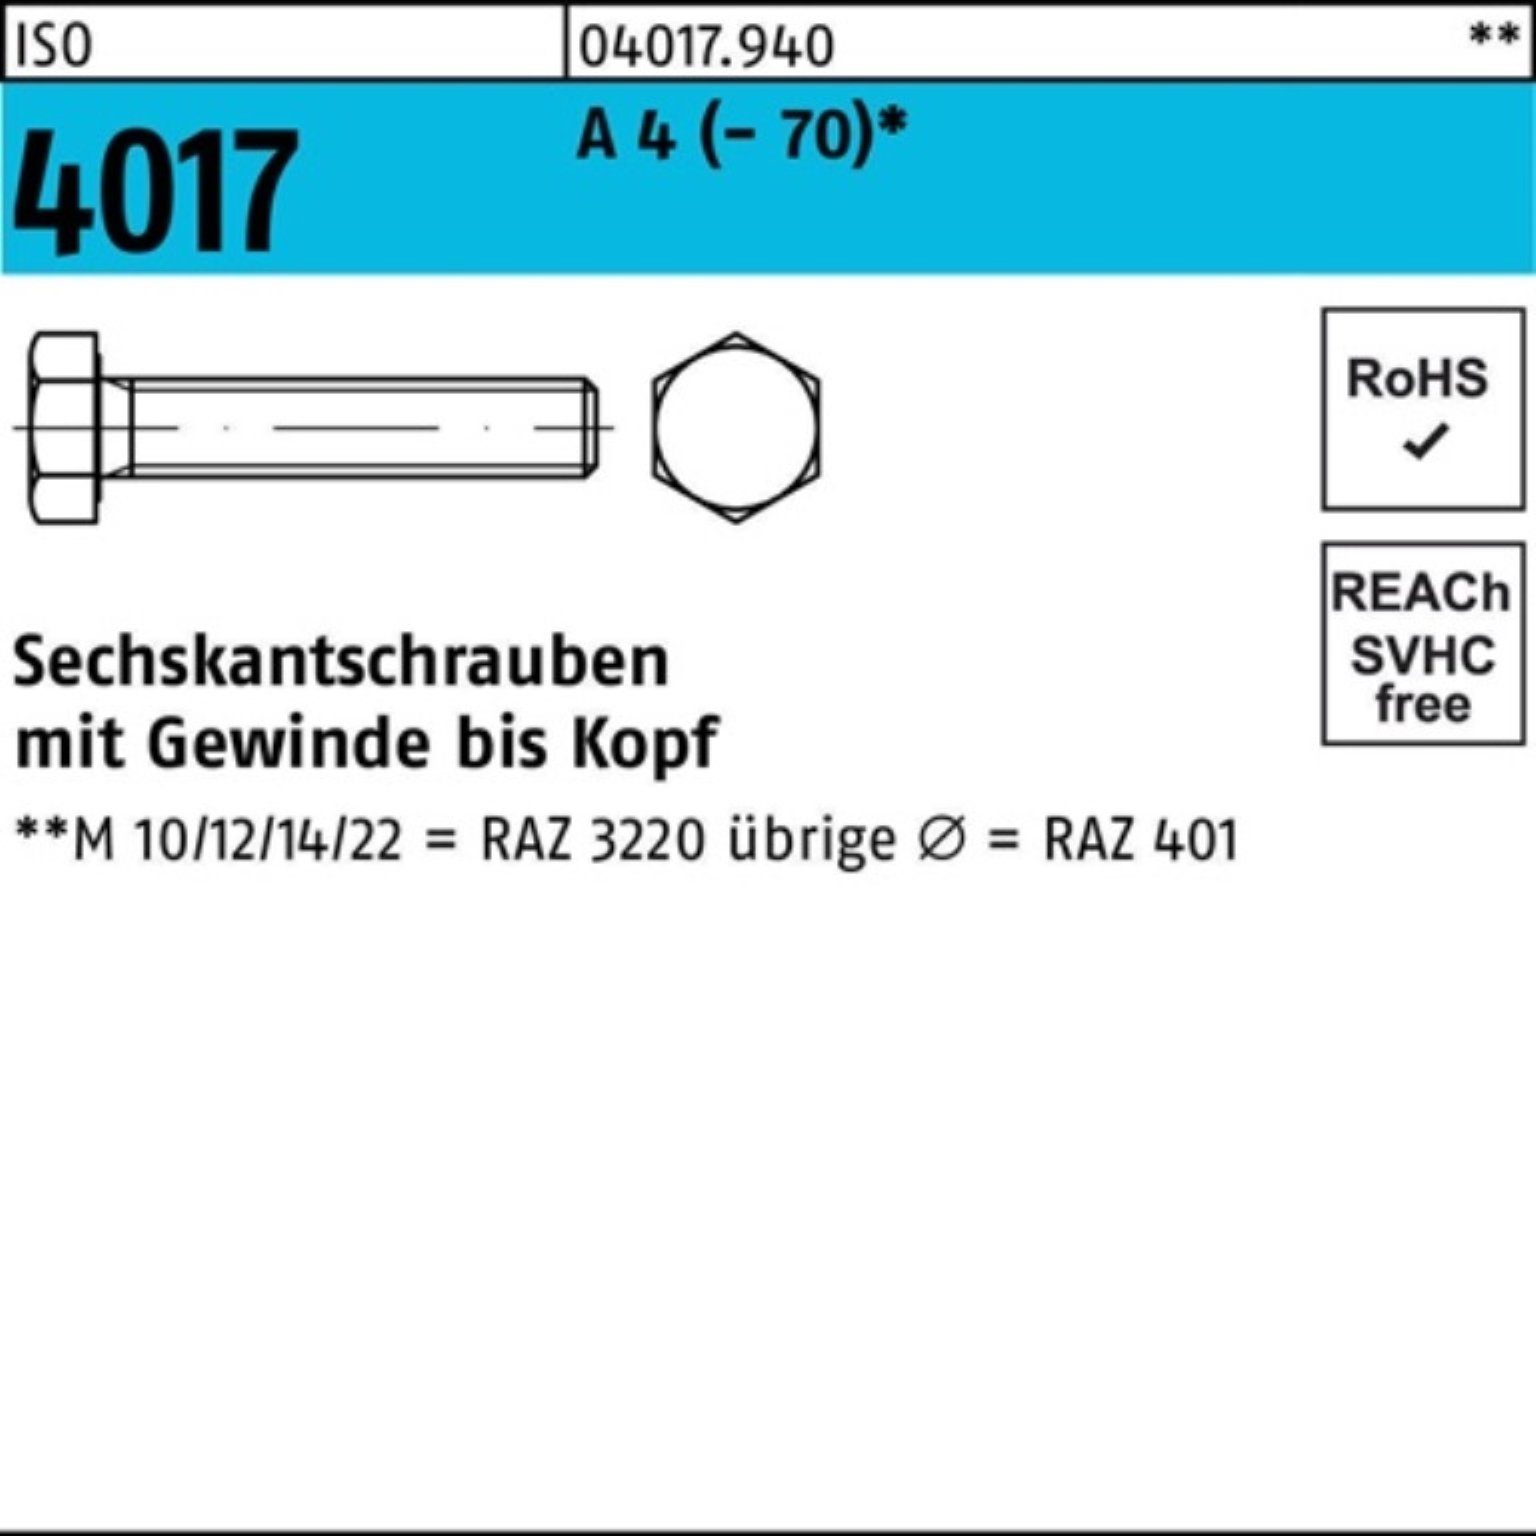 Bufab Sechskantschraube 100er Pack Sechskantschraube ISO 4017 VG M18x 50 A 4 (70) 1 Stück I